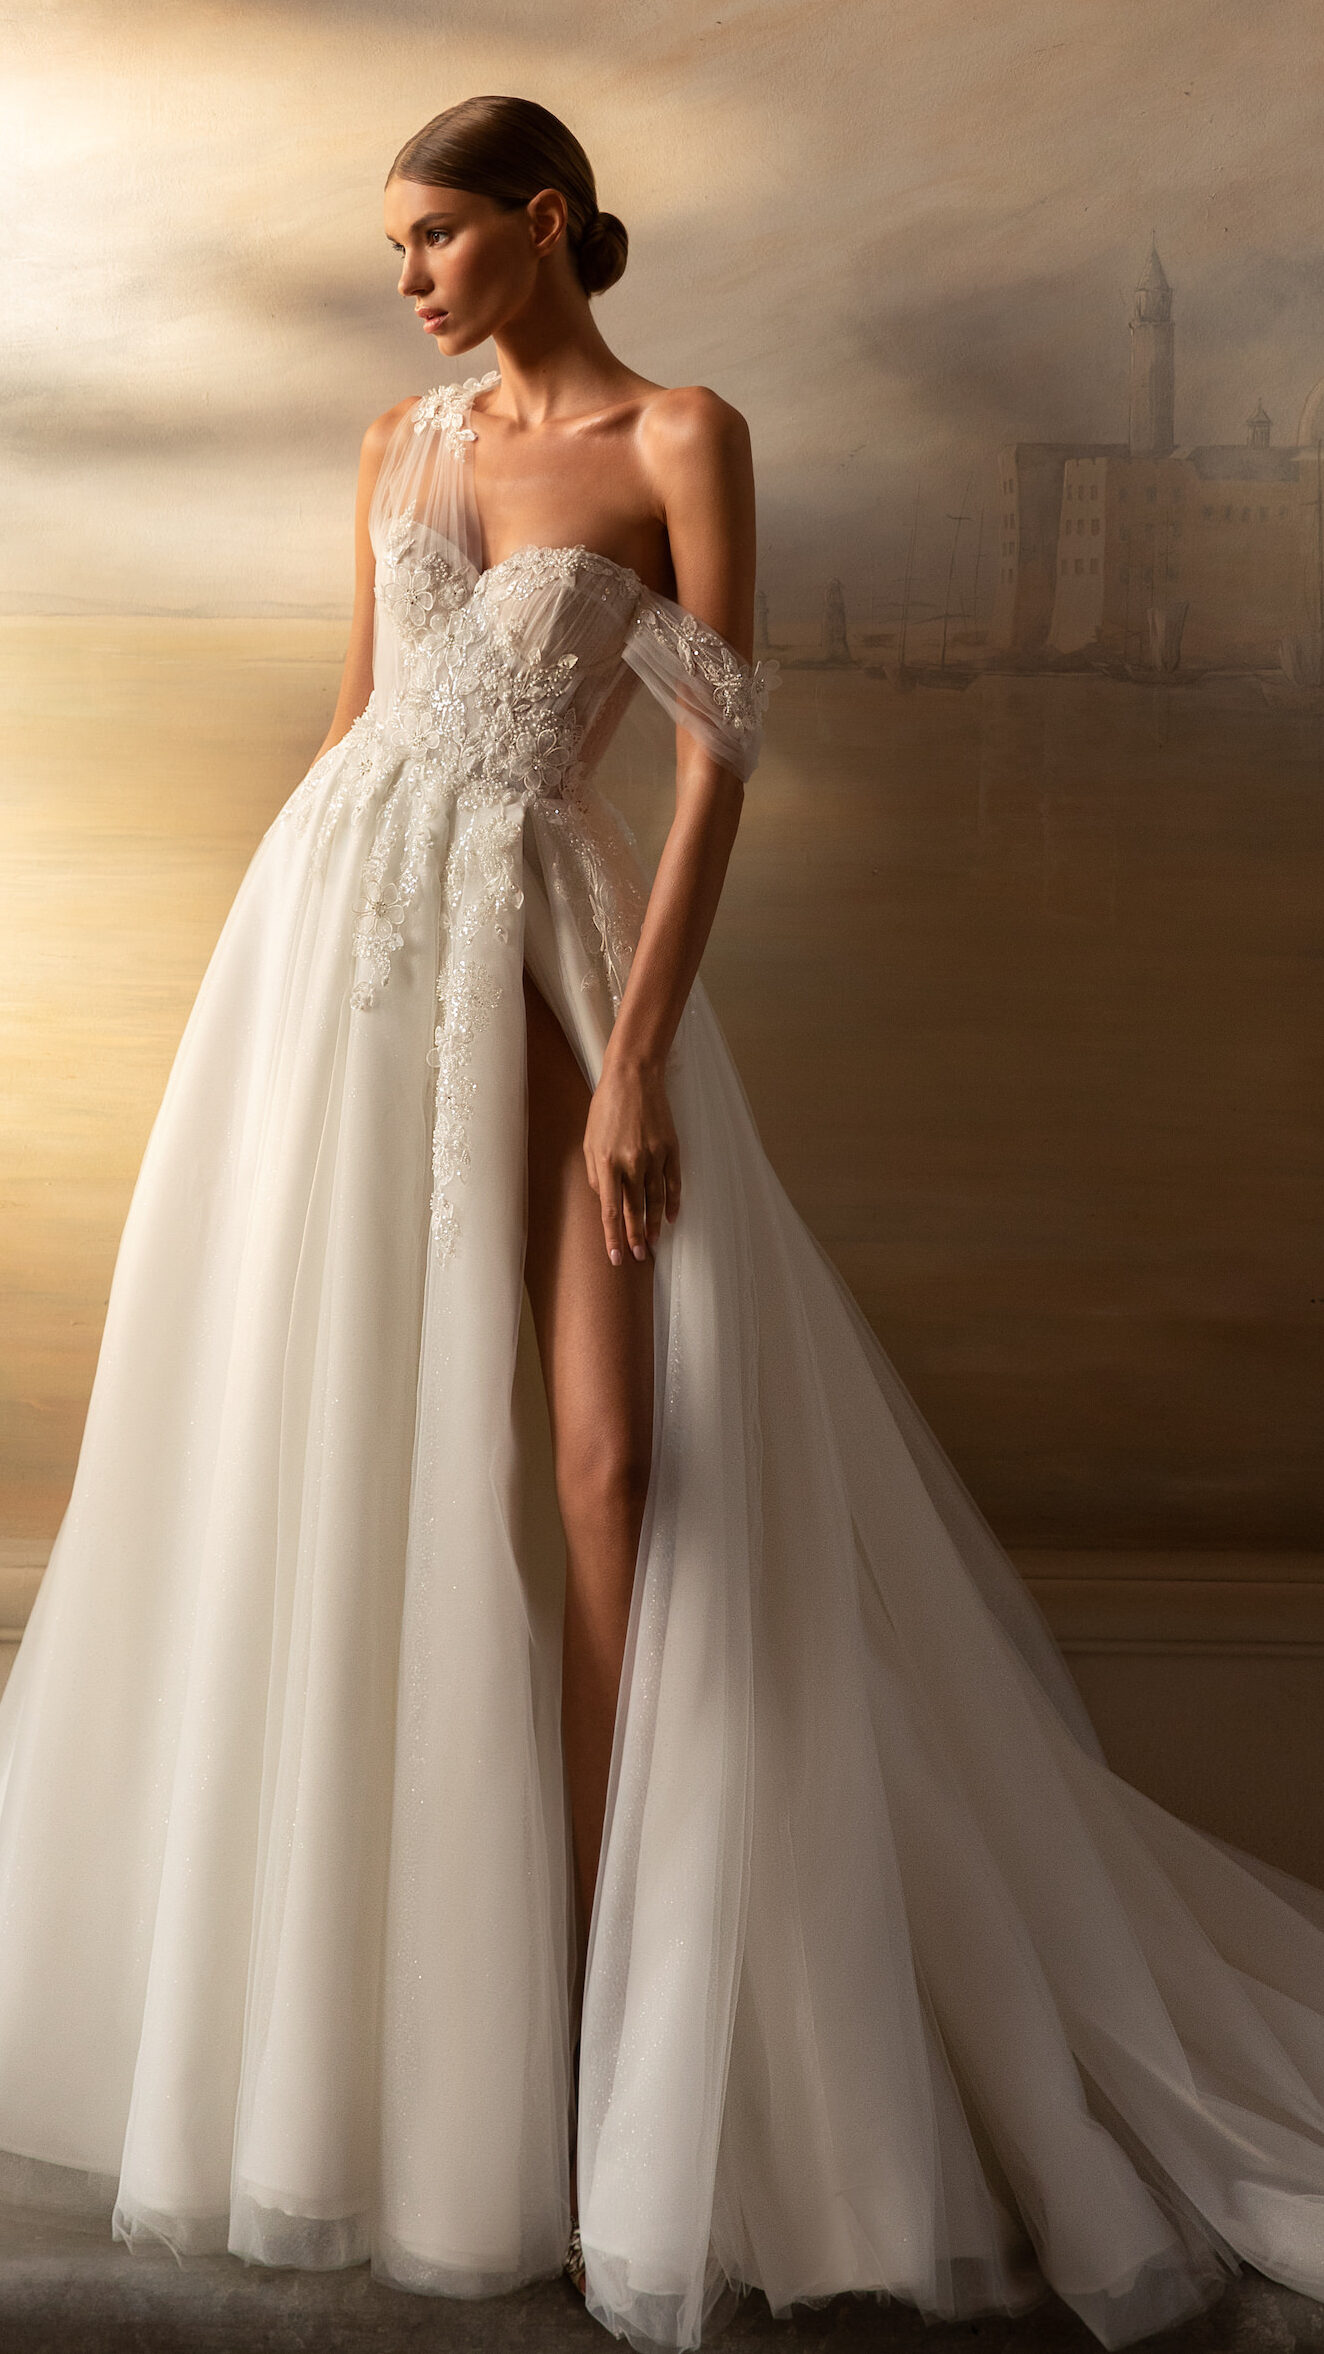 Leira by Armonia wedding dress